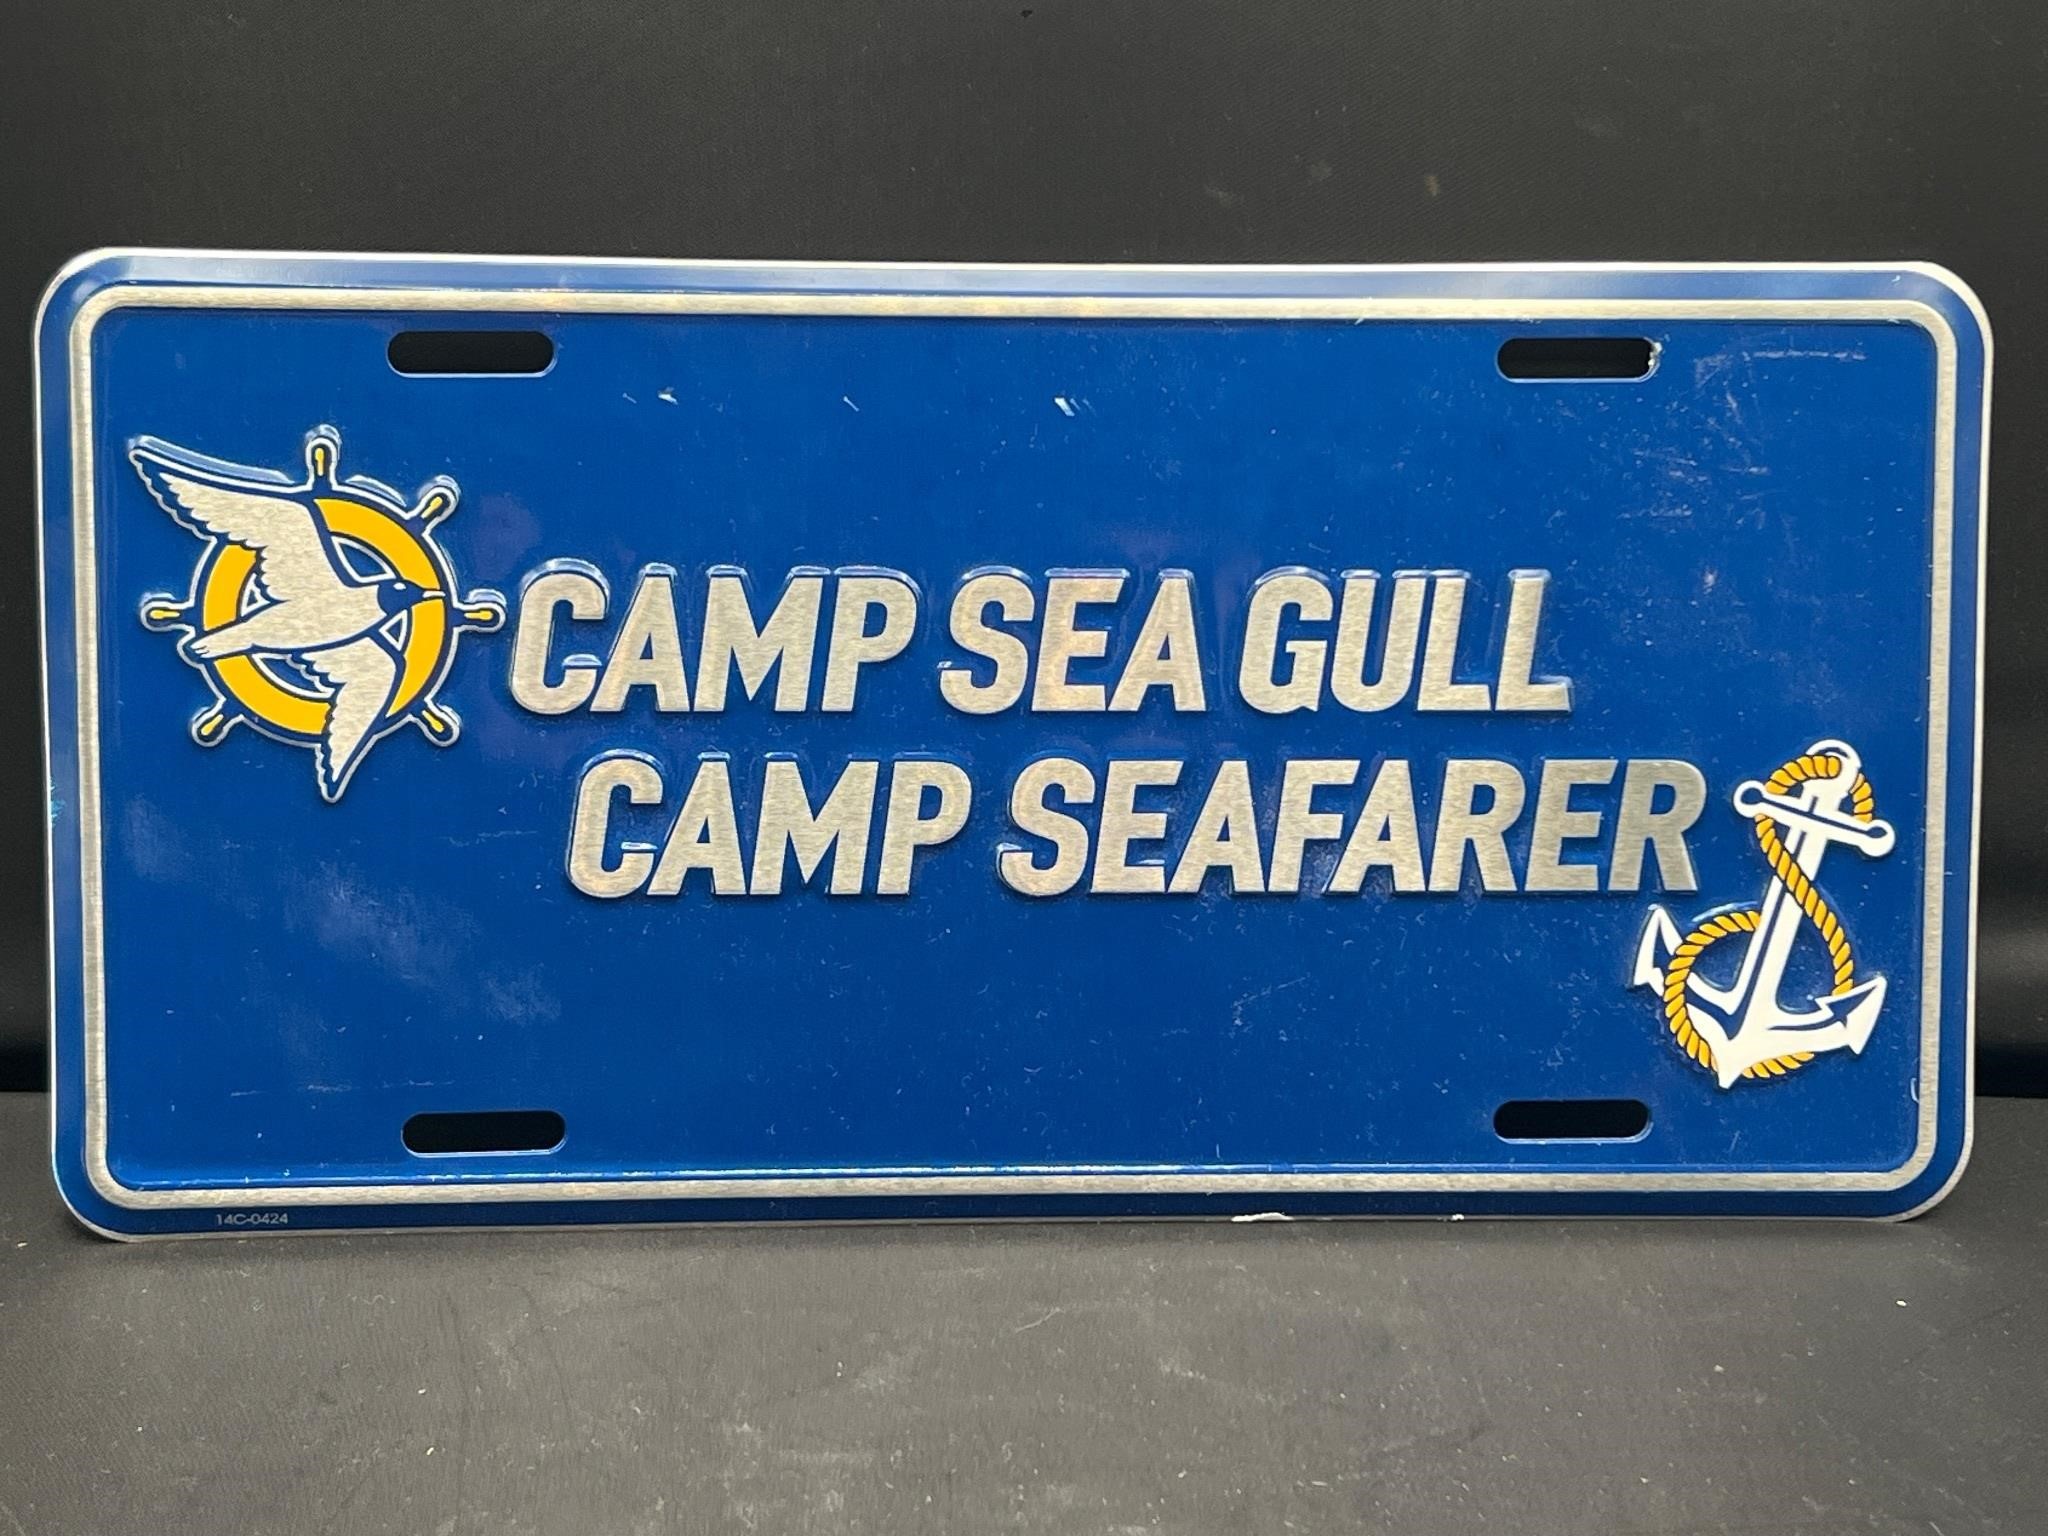 Camp Sea Gull Camp Seafarer license plate